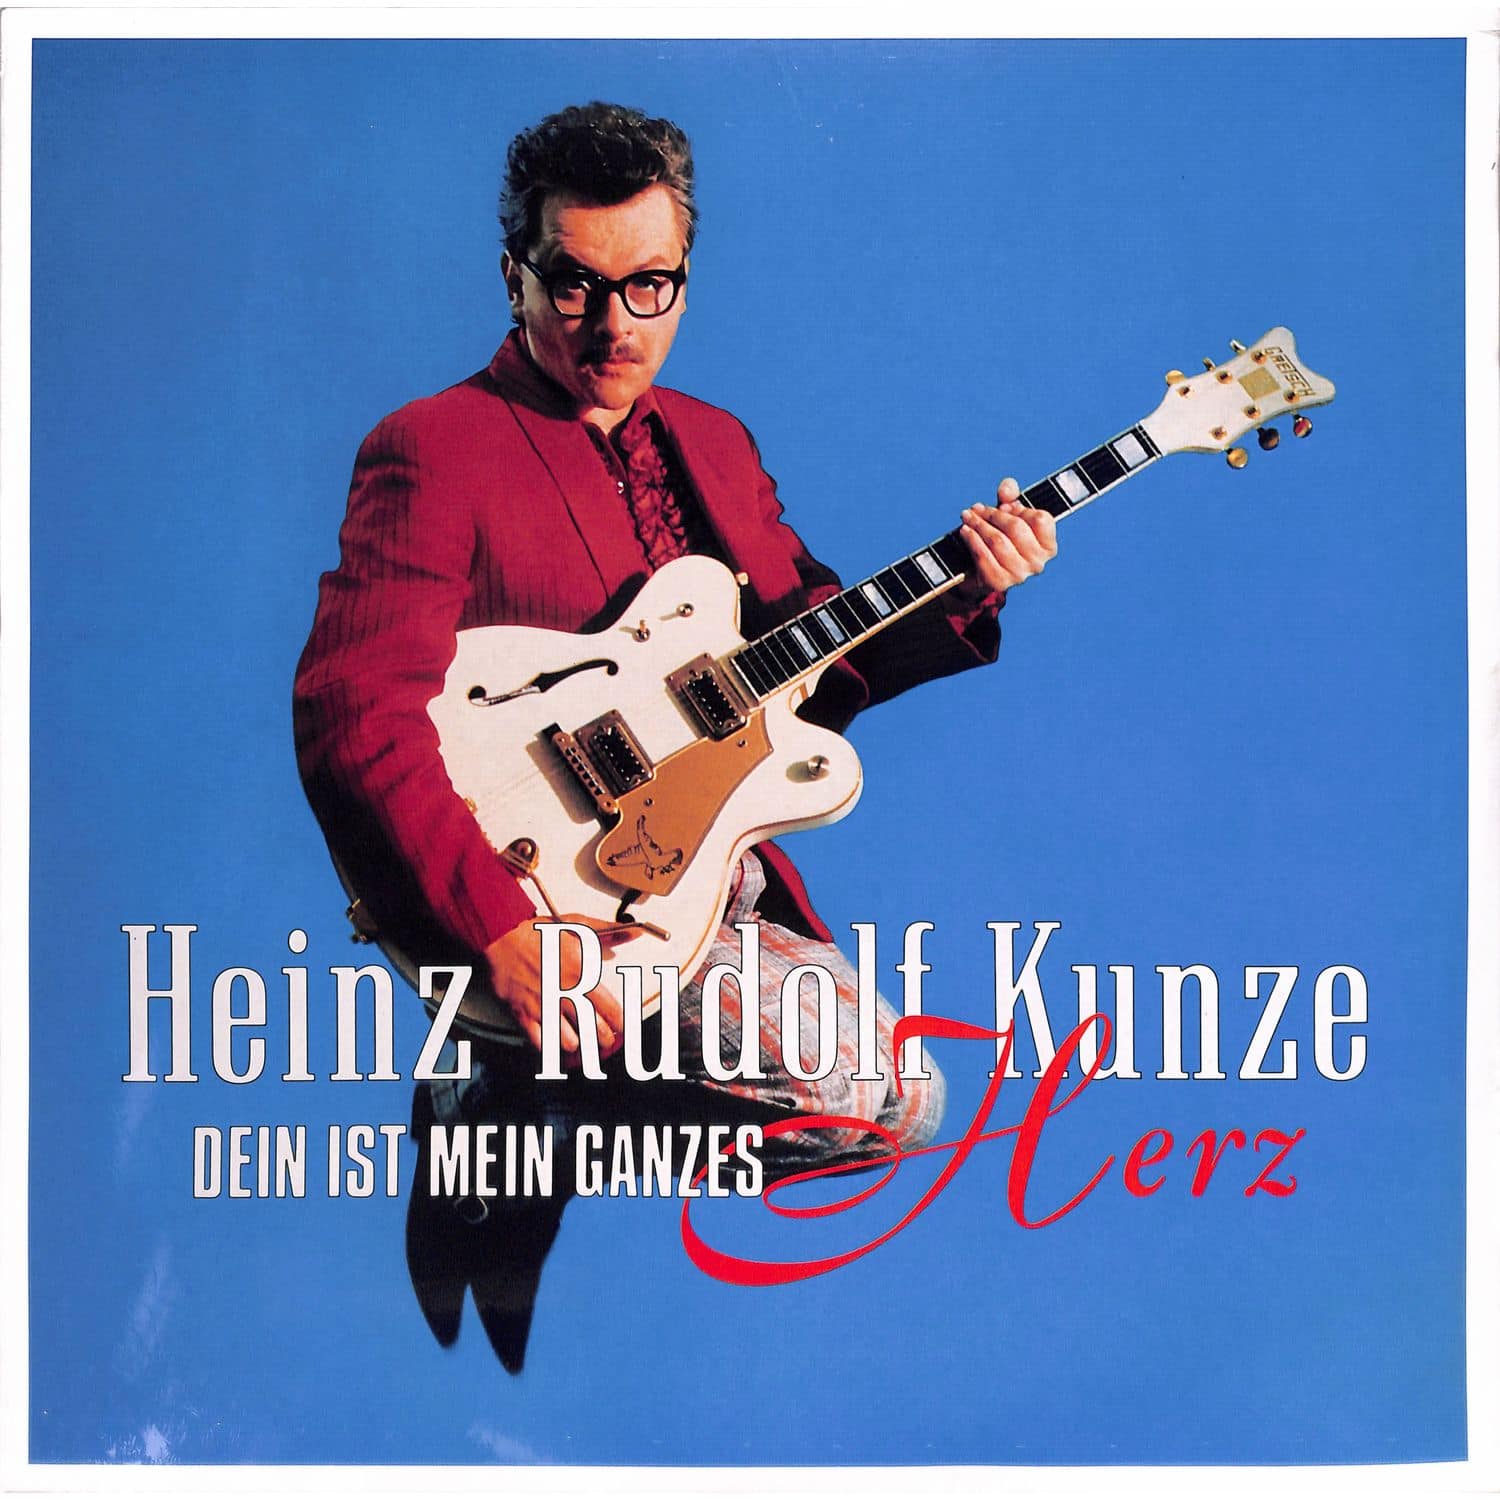 Heinz Rudolf Kunze - DEIN IST MEIN GANZES HERZ 